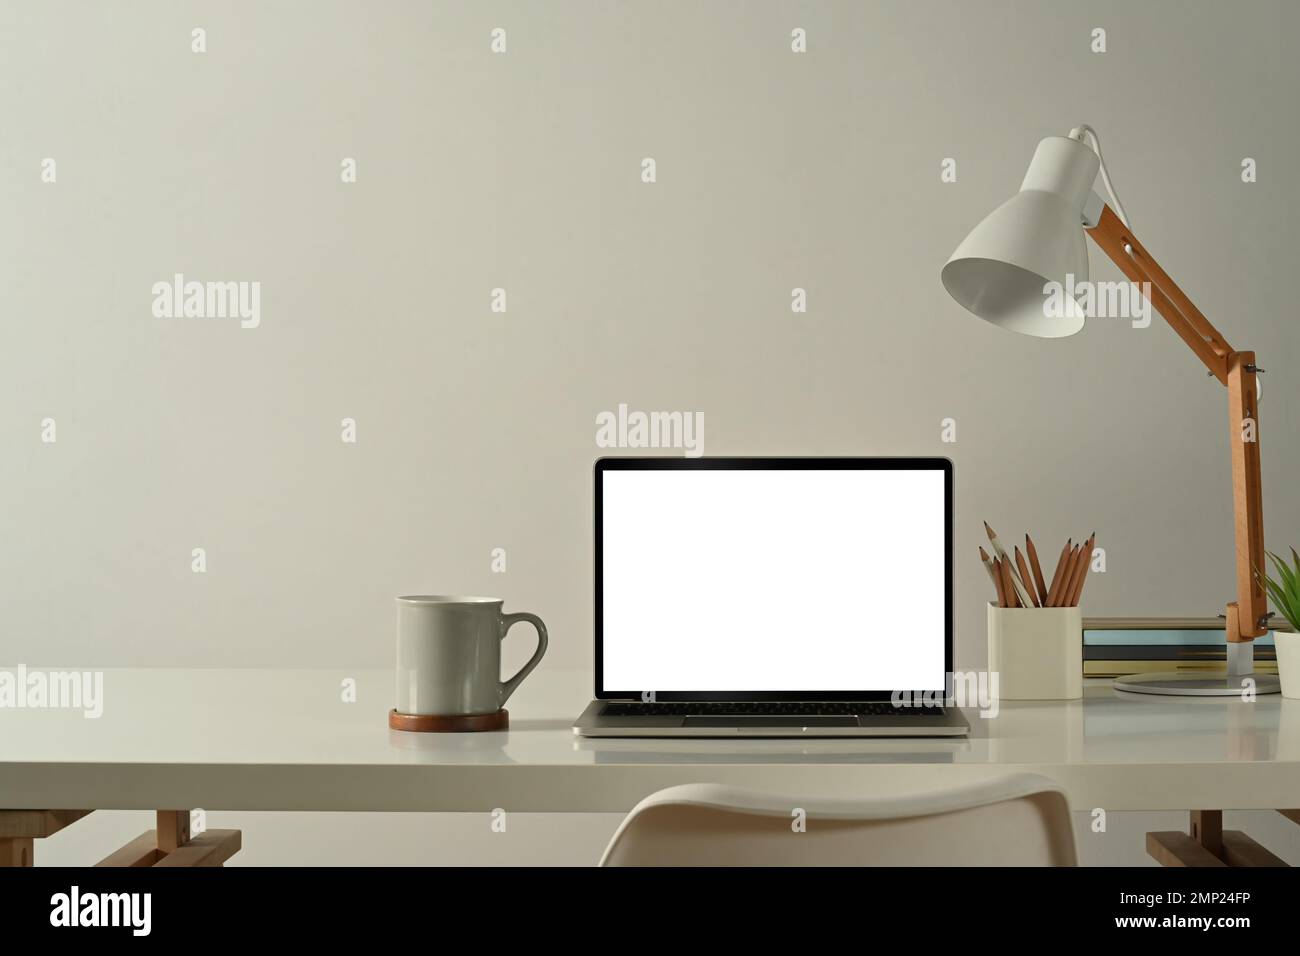 Vista frontale del computer portatile, della tazza da caffè, del portamatite e della lampada sul tavolo bianco in un ufficio domestico di dimensioni ridotte Foto Stock